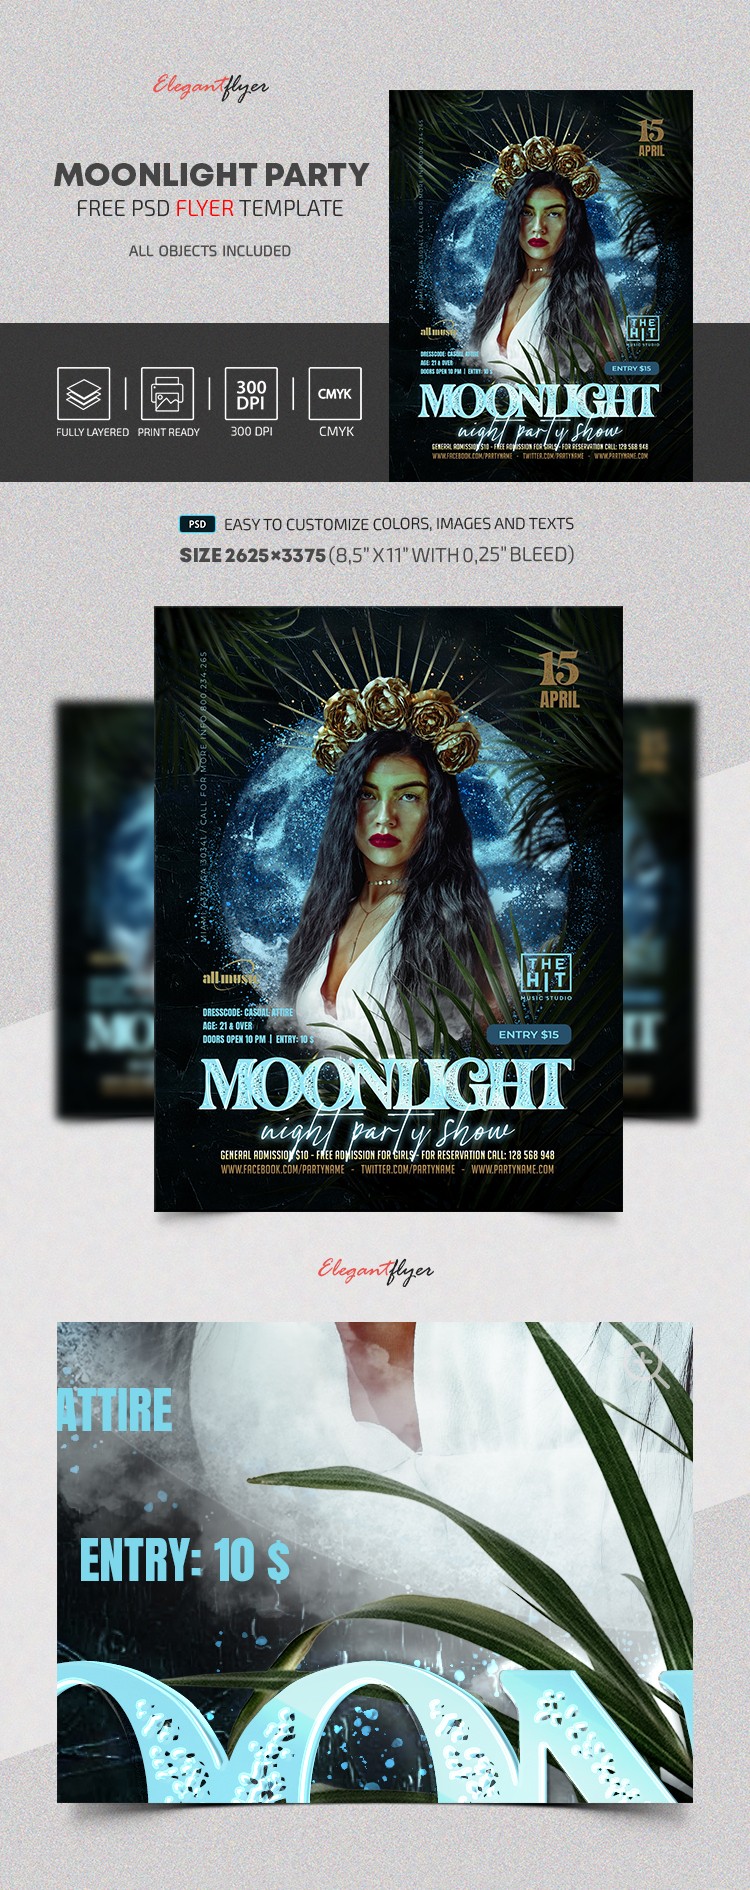 Mondlicht Party Flyer by ElegantFlyer